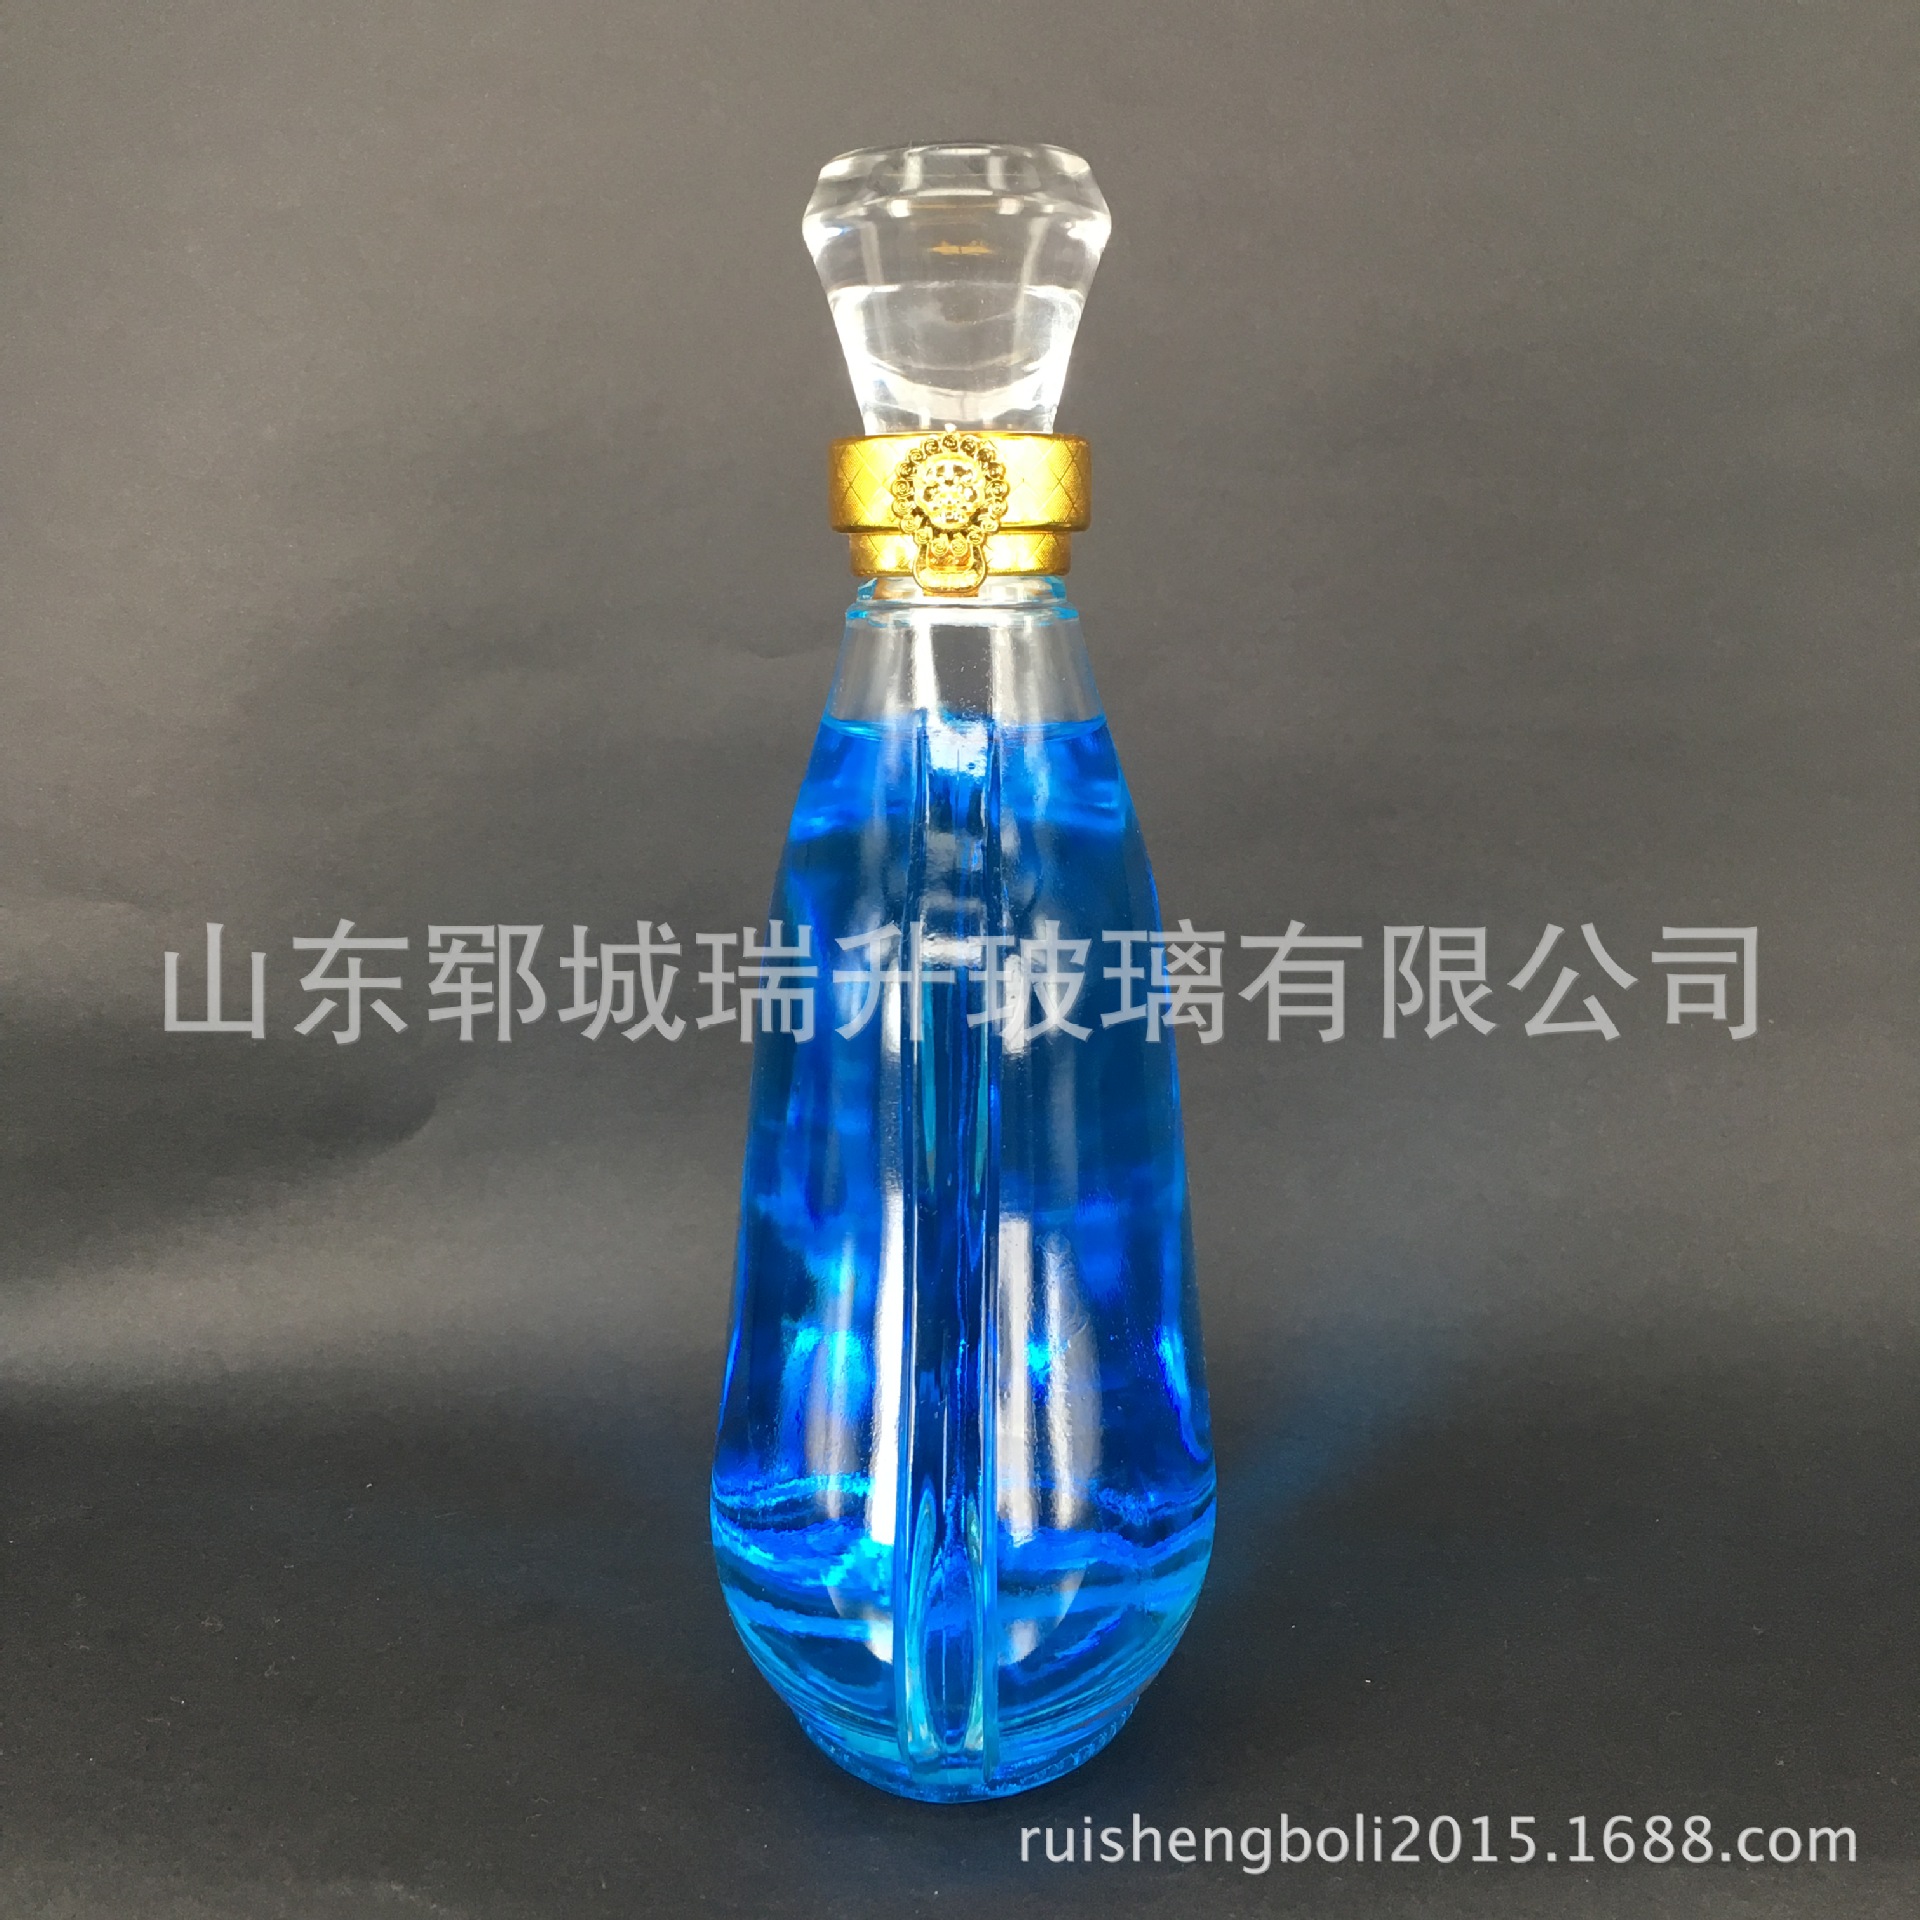 价格优惠 晶白料手工玻璃瓶 厂家直销 烤花蒙砂深加工处理 500ml4